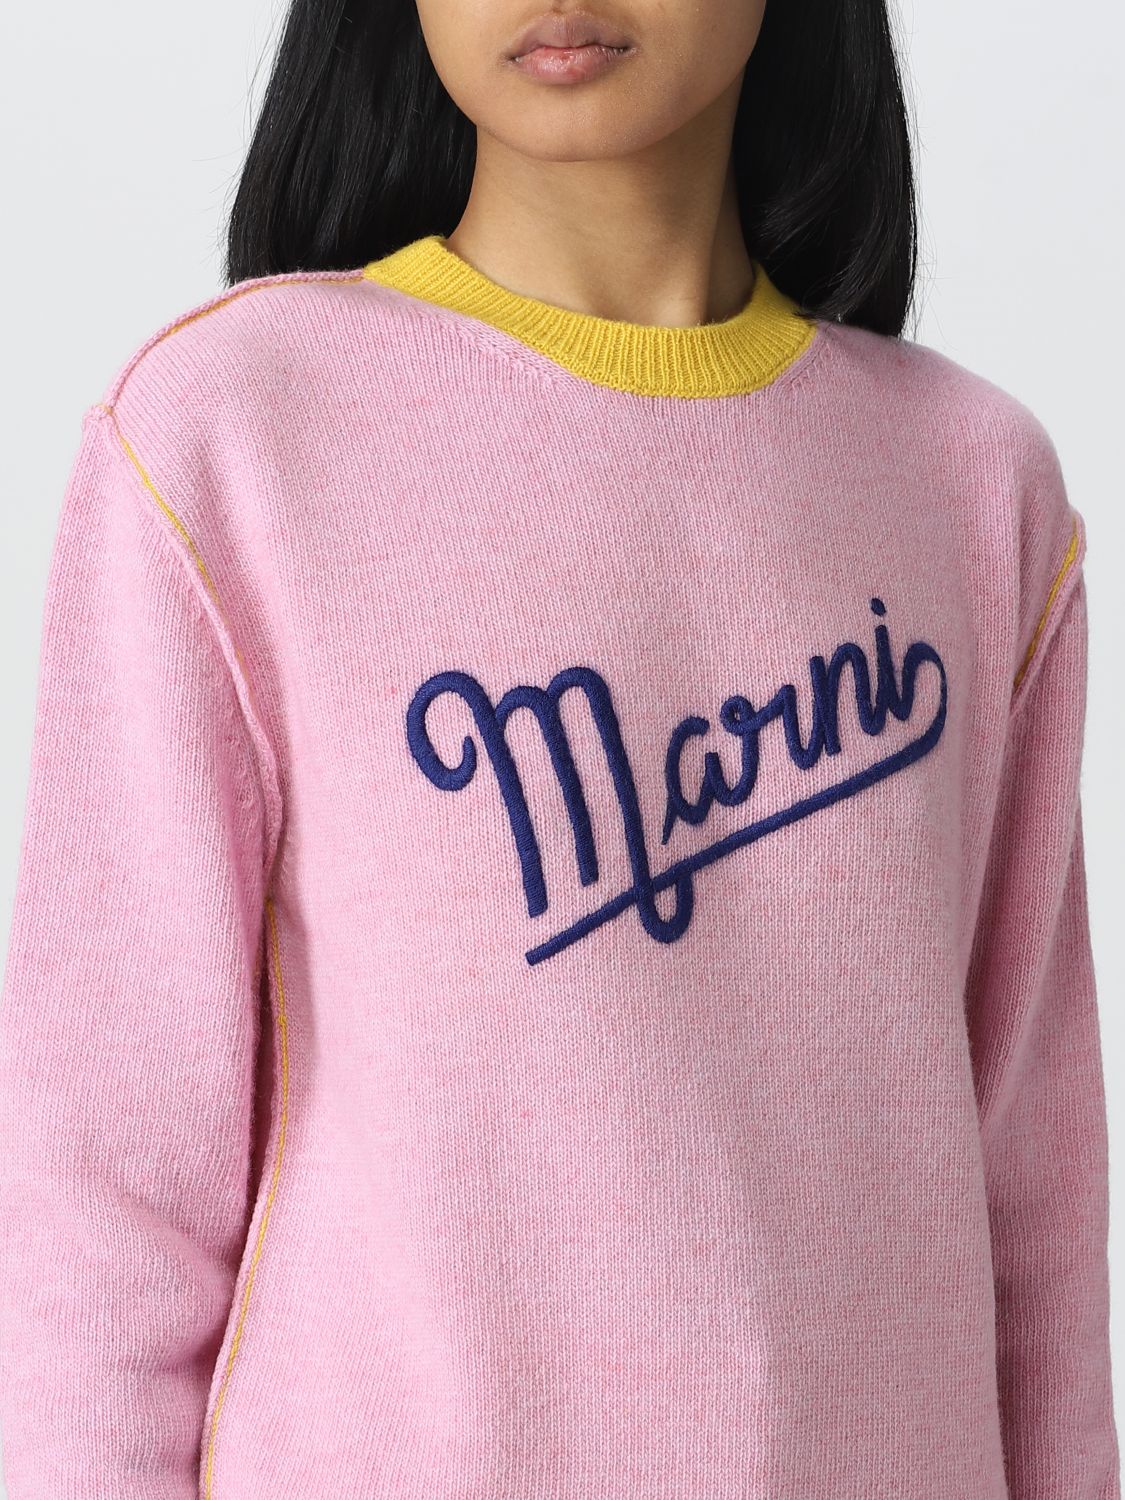 marni レディースセーター-